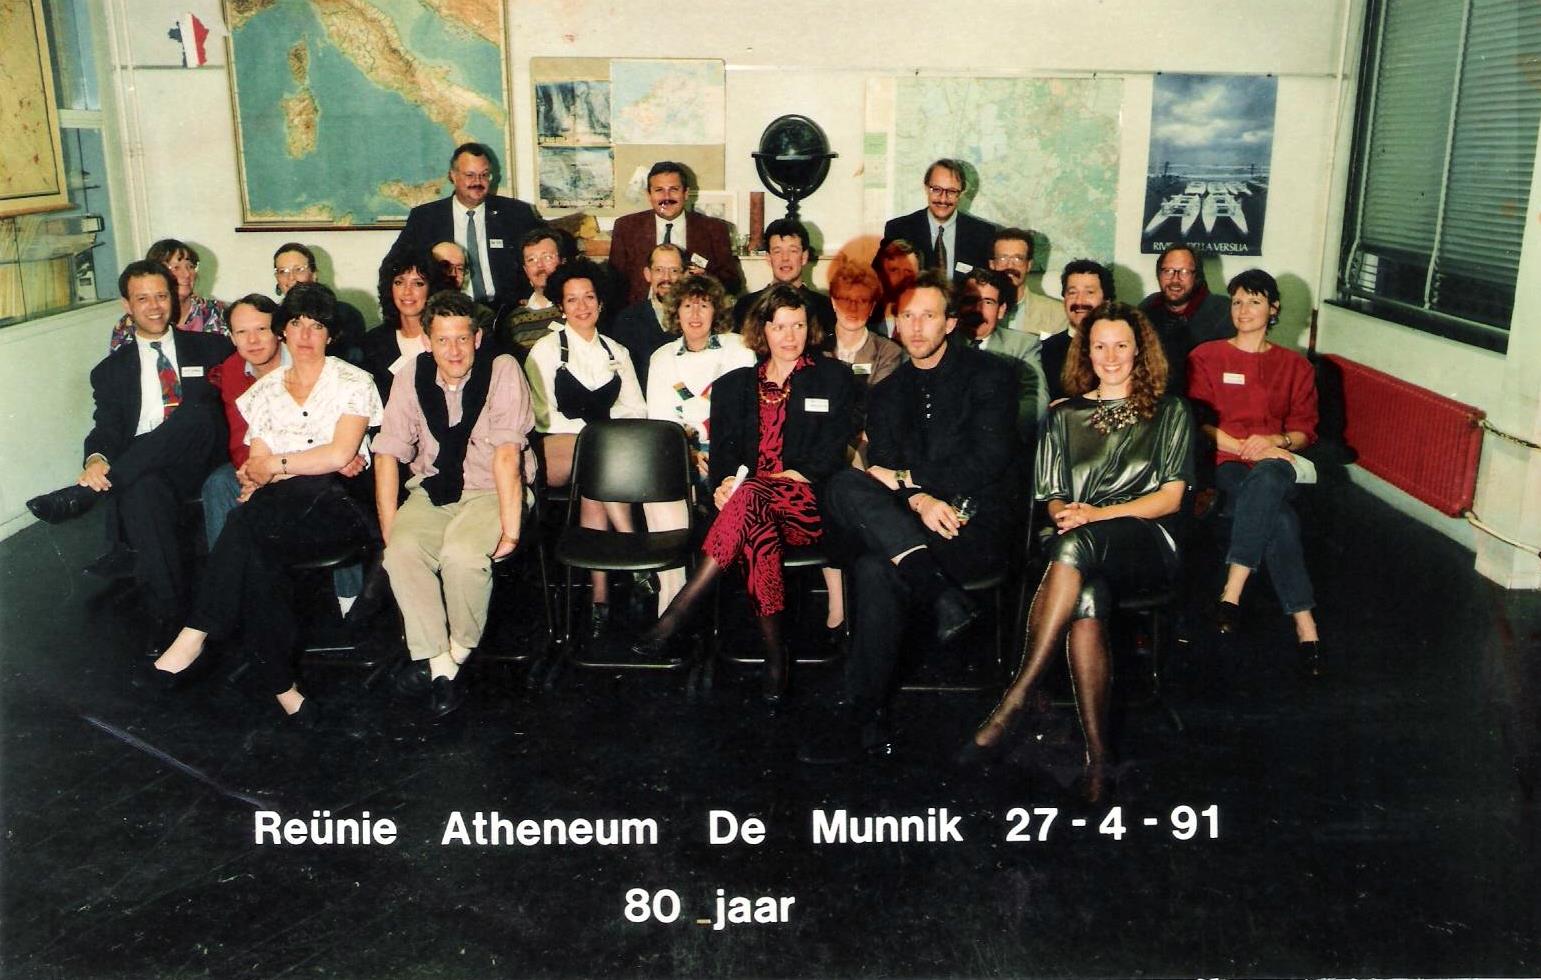 Reünie Atheneum De Munnik in 1991